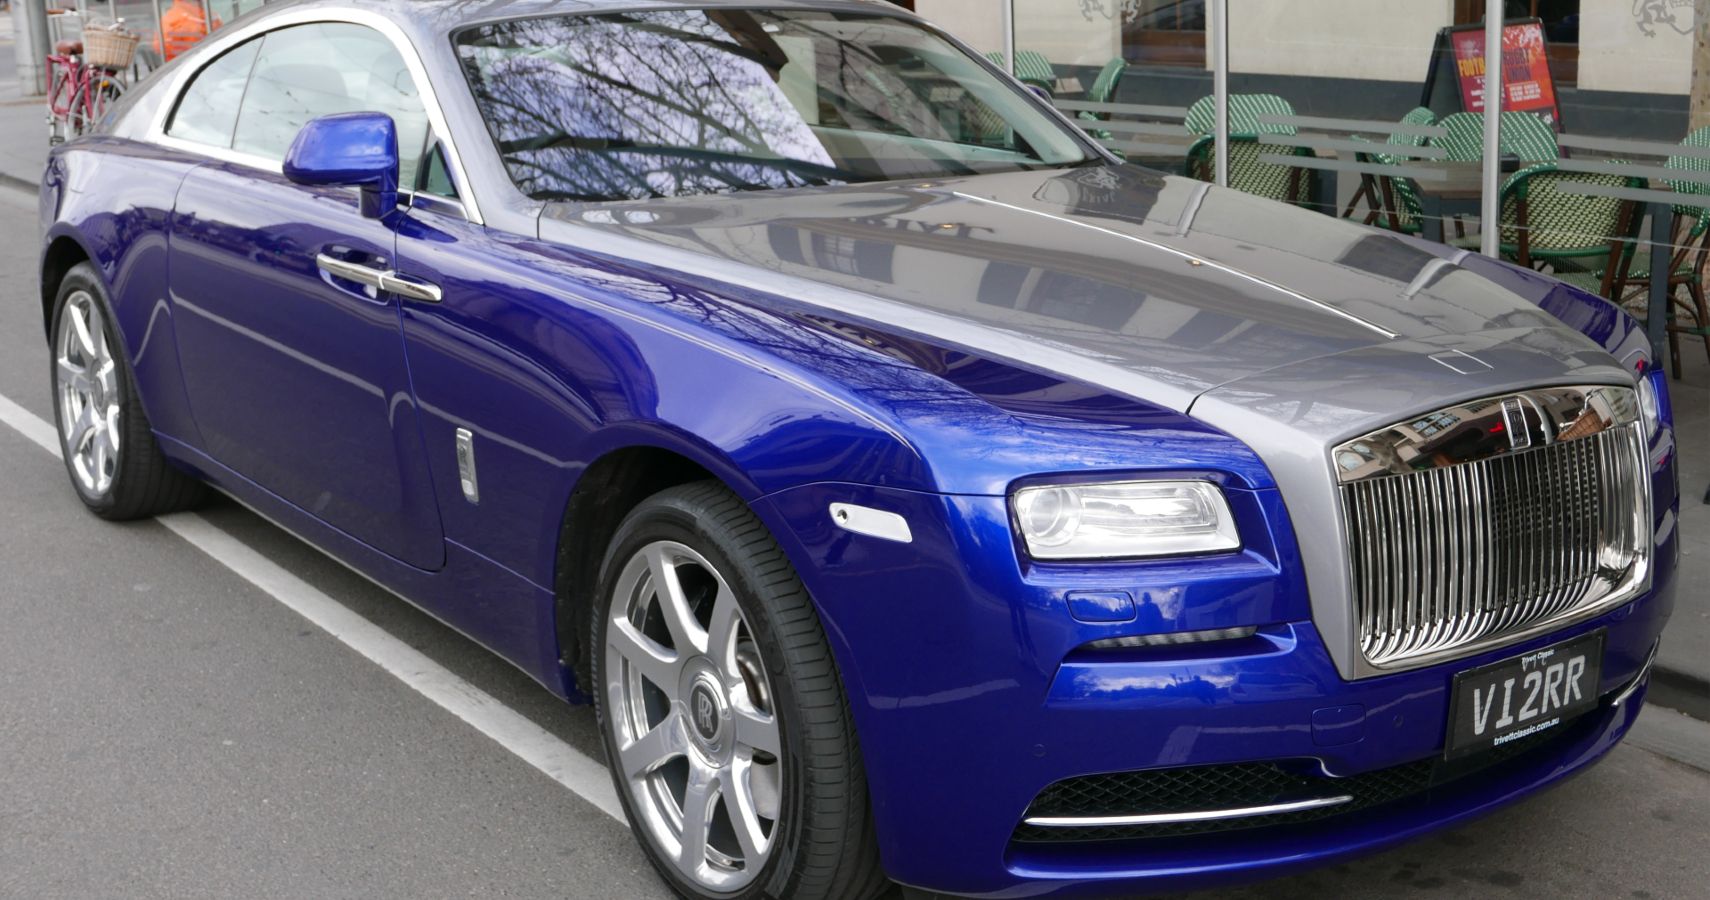 An Image Of A Royal Blue Rolls Royce Wraith